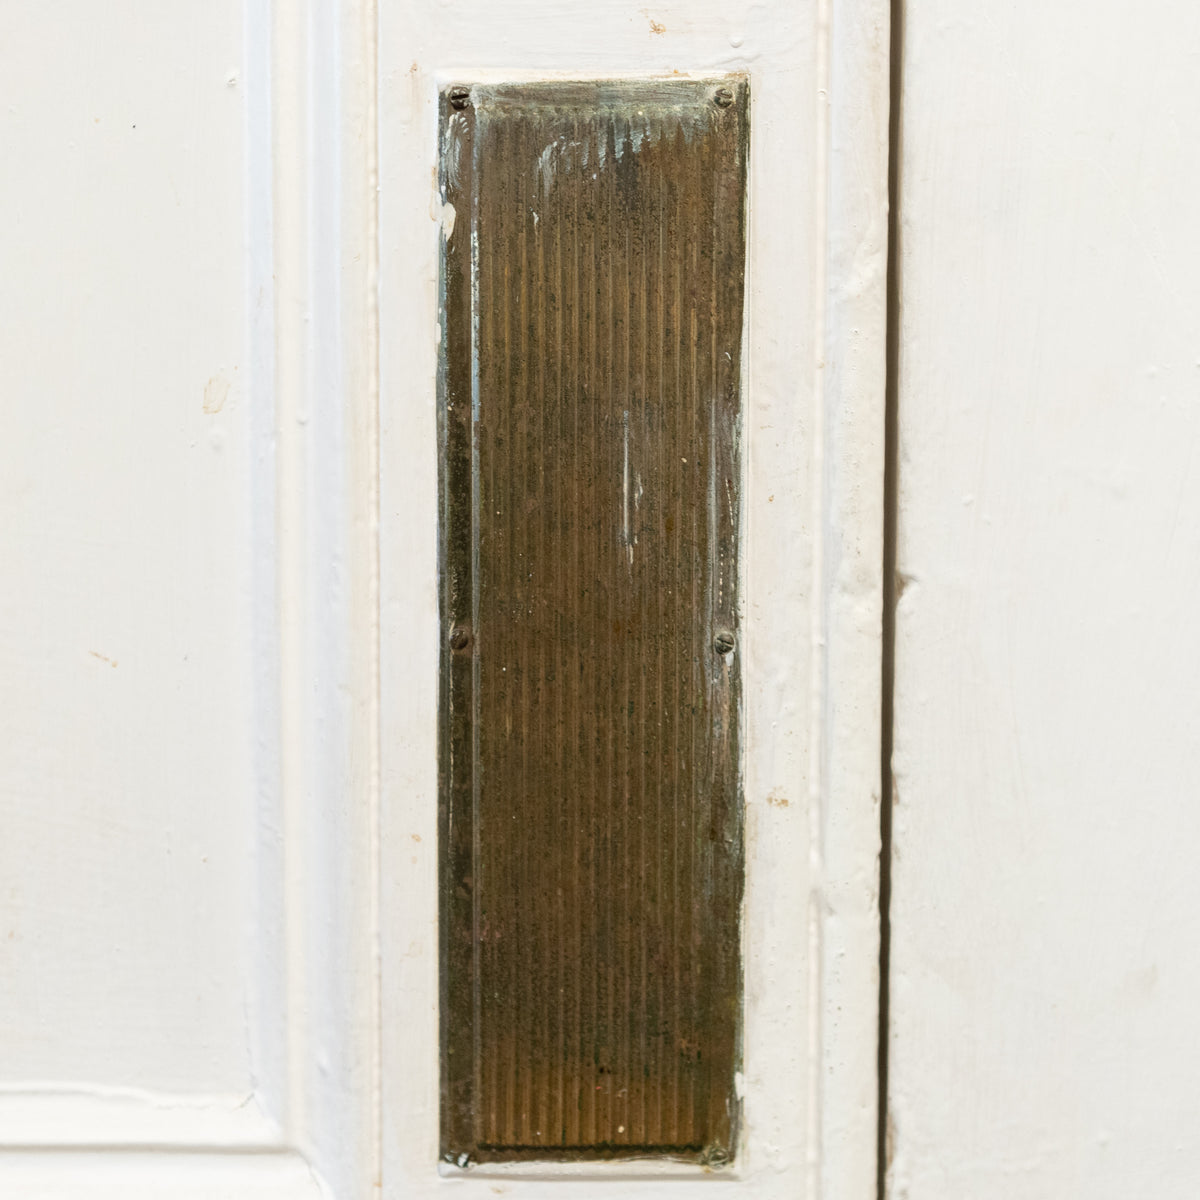 Antique Double Doors |  Victorian 4 Panel Entrance - 240cm x 182.5cm | The Architectural Forum